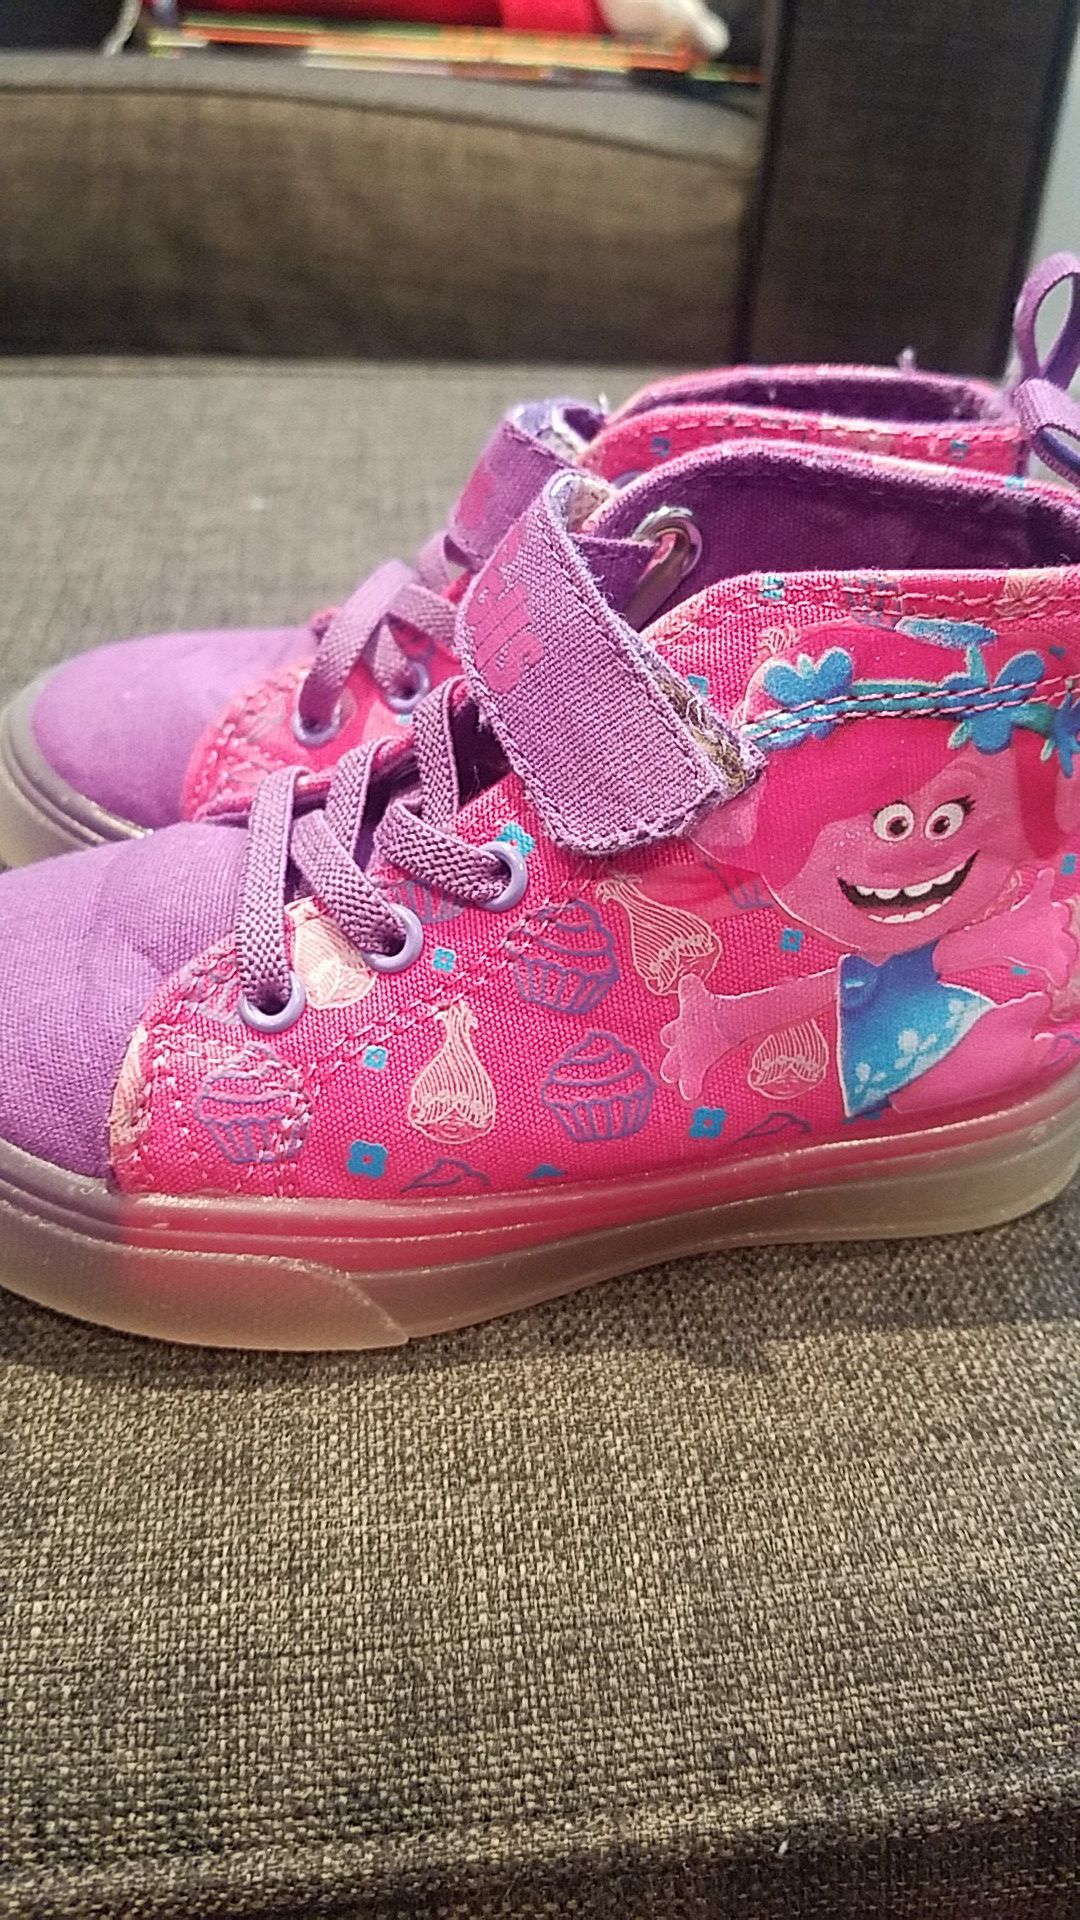 Toddler girl size 8 Poppy Troll light up sneakers